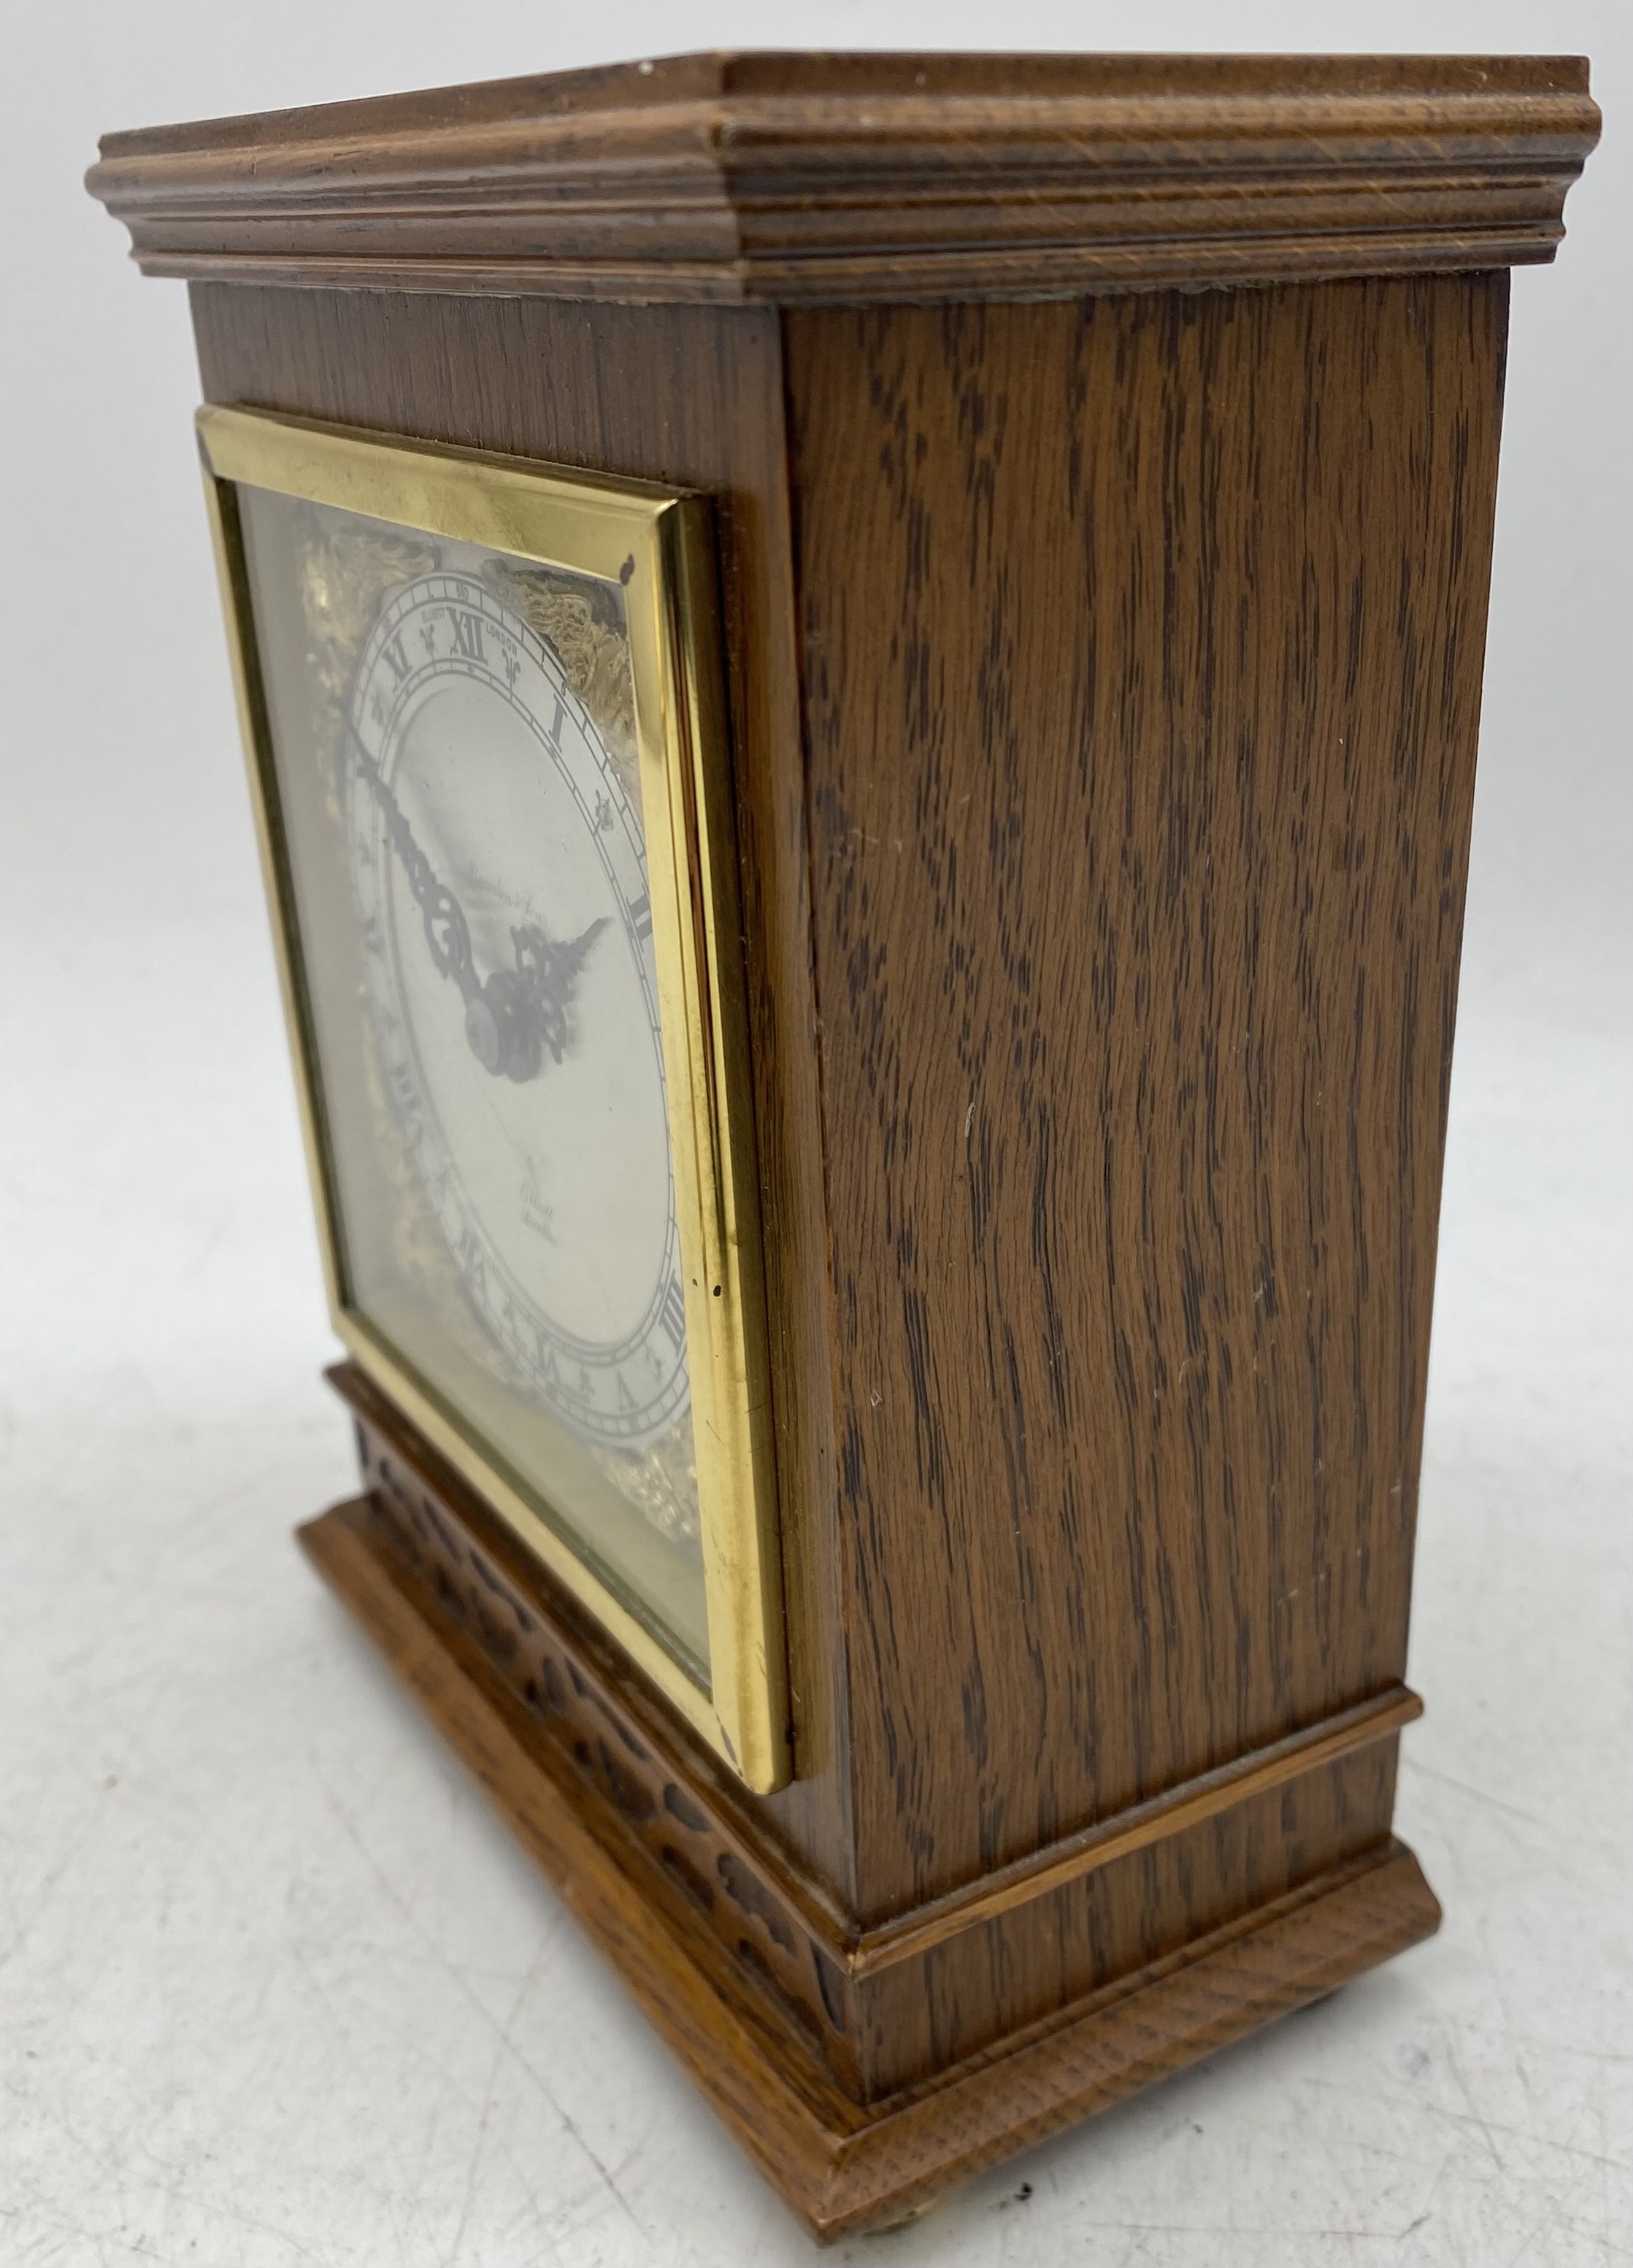 An Elliott of London small bracket clock in oak case along with a brass Swiza alarm clock - Image 4 of 9